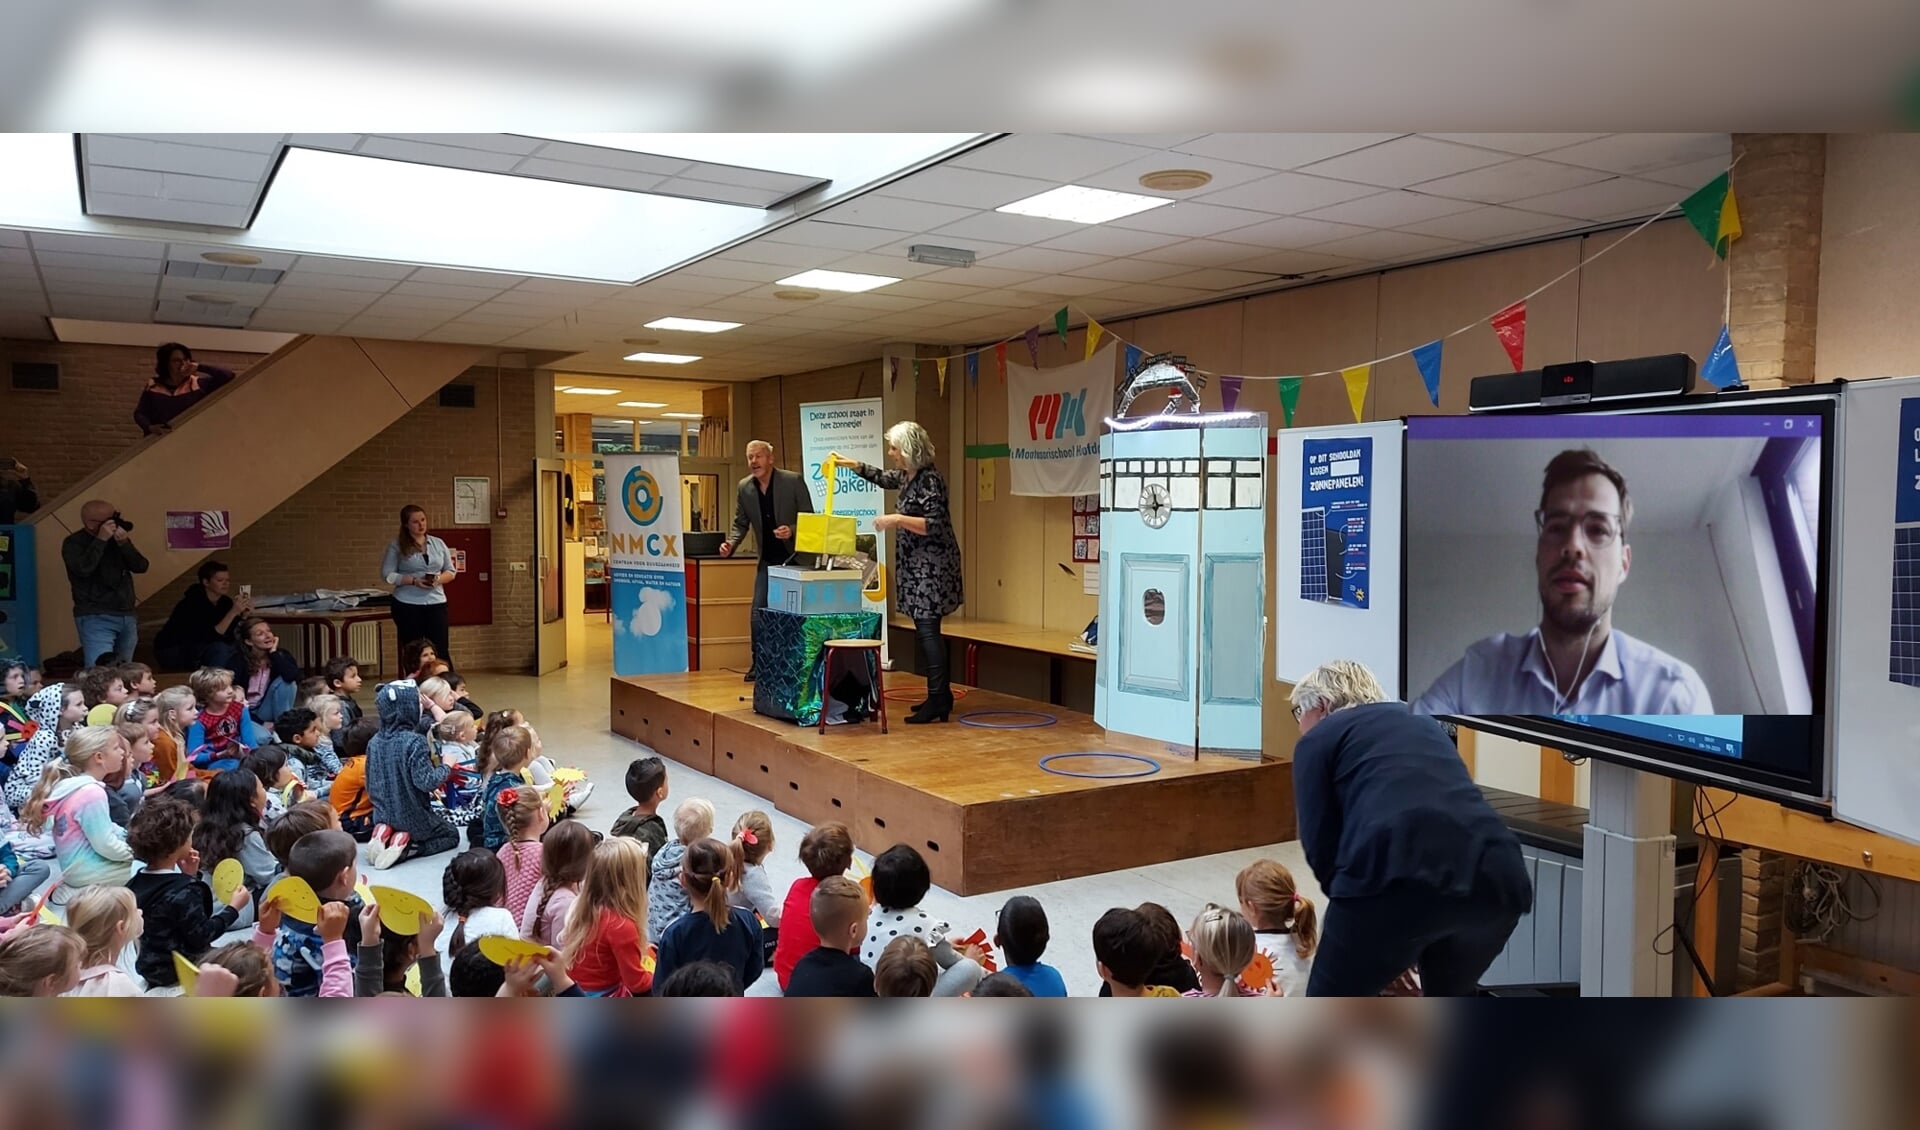 De eerste Montessorischool in Hoofddorp is de eerste school die 188 zonnepanelen heeft gekregen uit een samenwerkingsproject van NMCX.